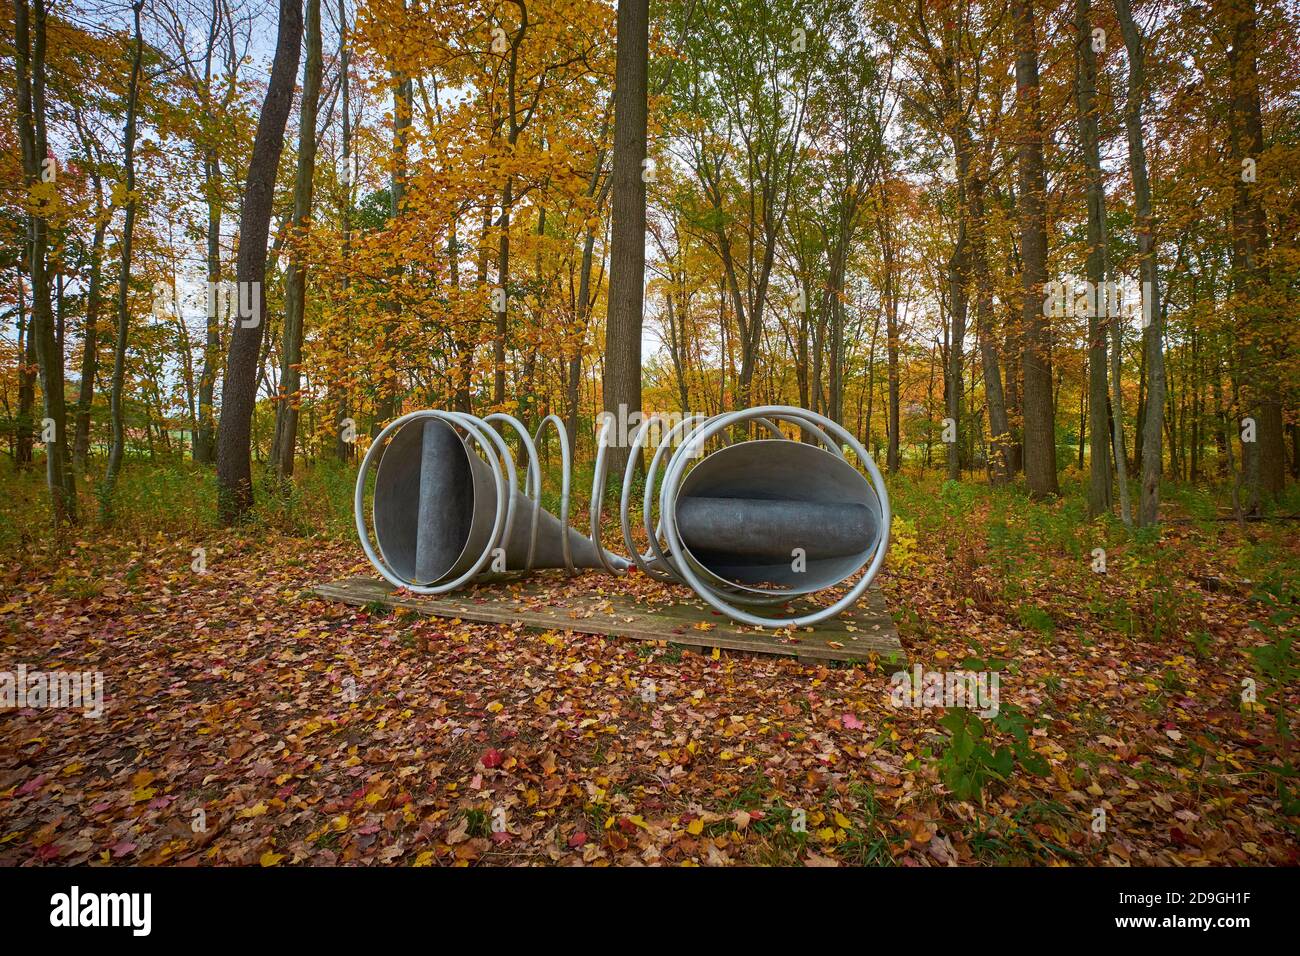 John Newmans Wit's End Skulptur aus runden, silbernen Metallrohren. Während des Herbstes ist die Herbstfärbung im Storm King Art Center in New York am höchsten. Stockfoto